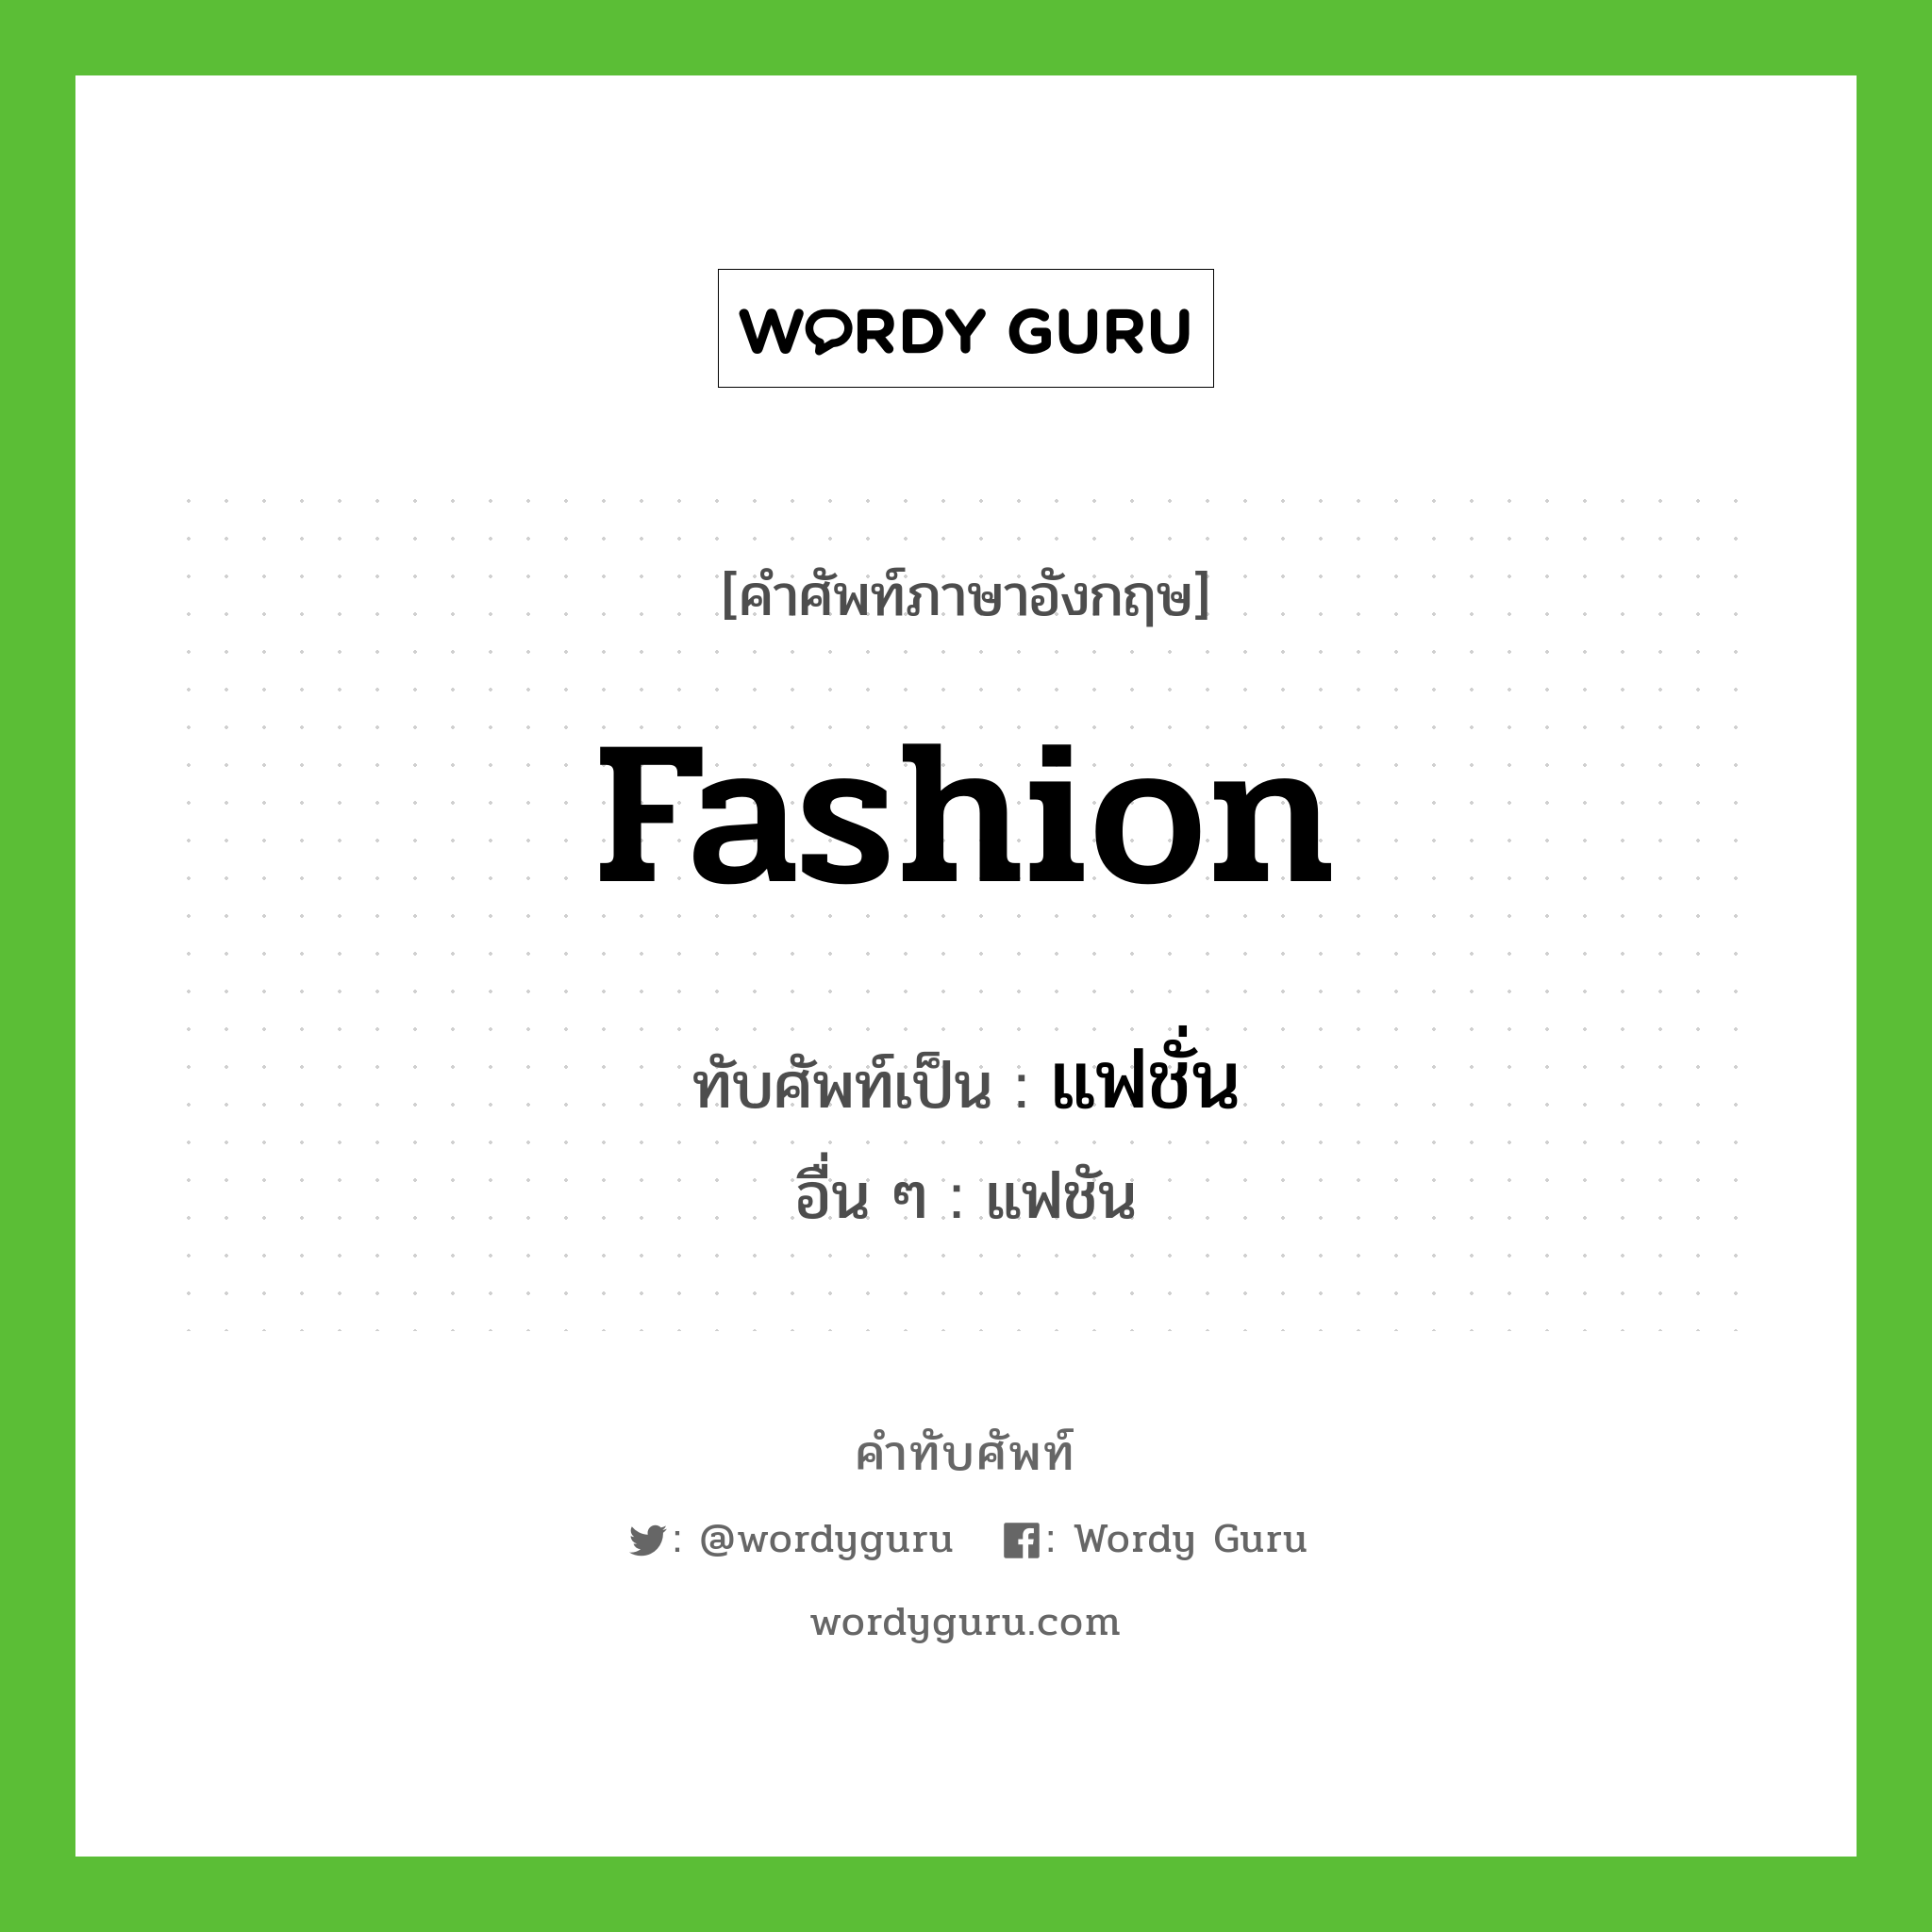 fashion เขียนเป็นคำไทยว่าอะไร?, คำศัพท์ภาษาอังกฤษ fashion ทับศัพท์เป็น แฟชั่น อื่น ๆ แฟชัน